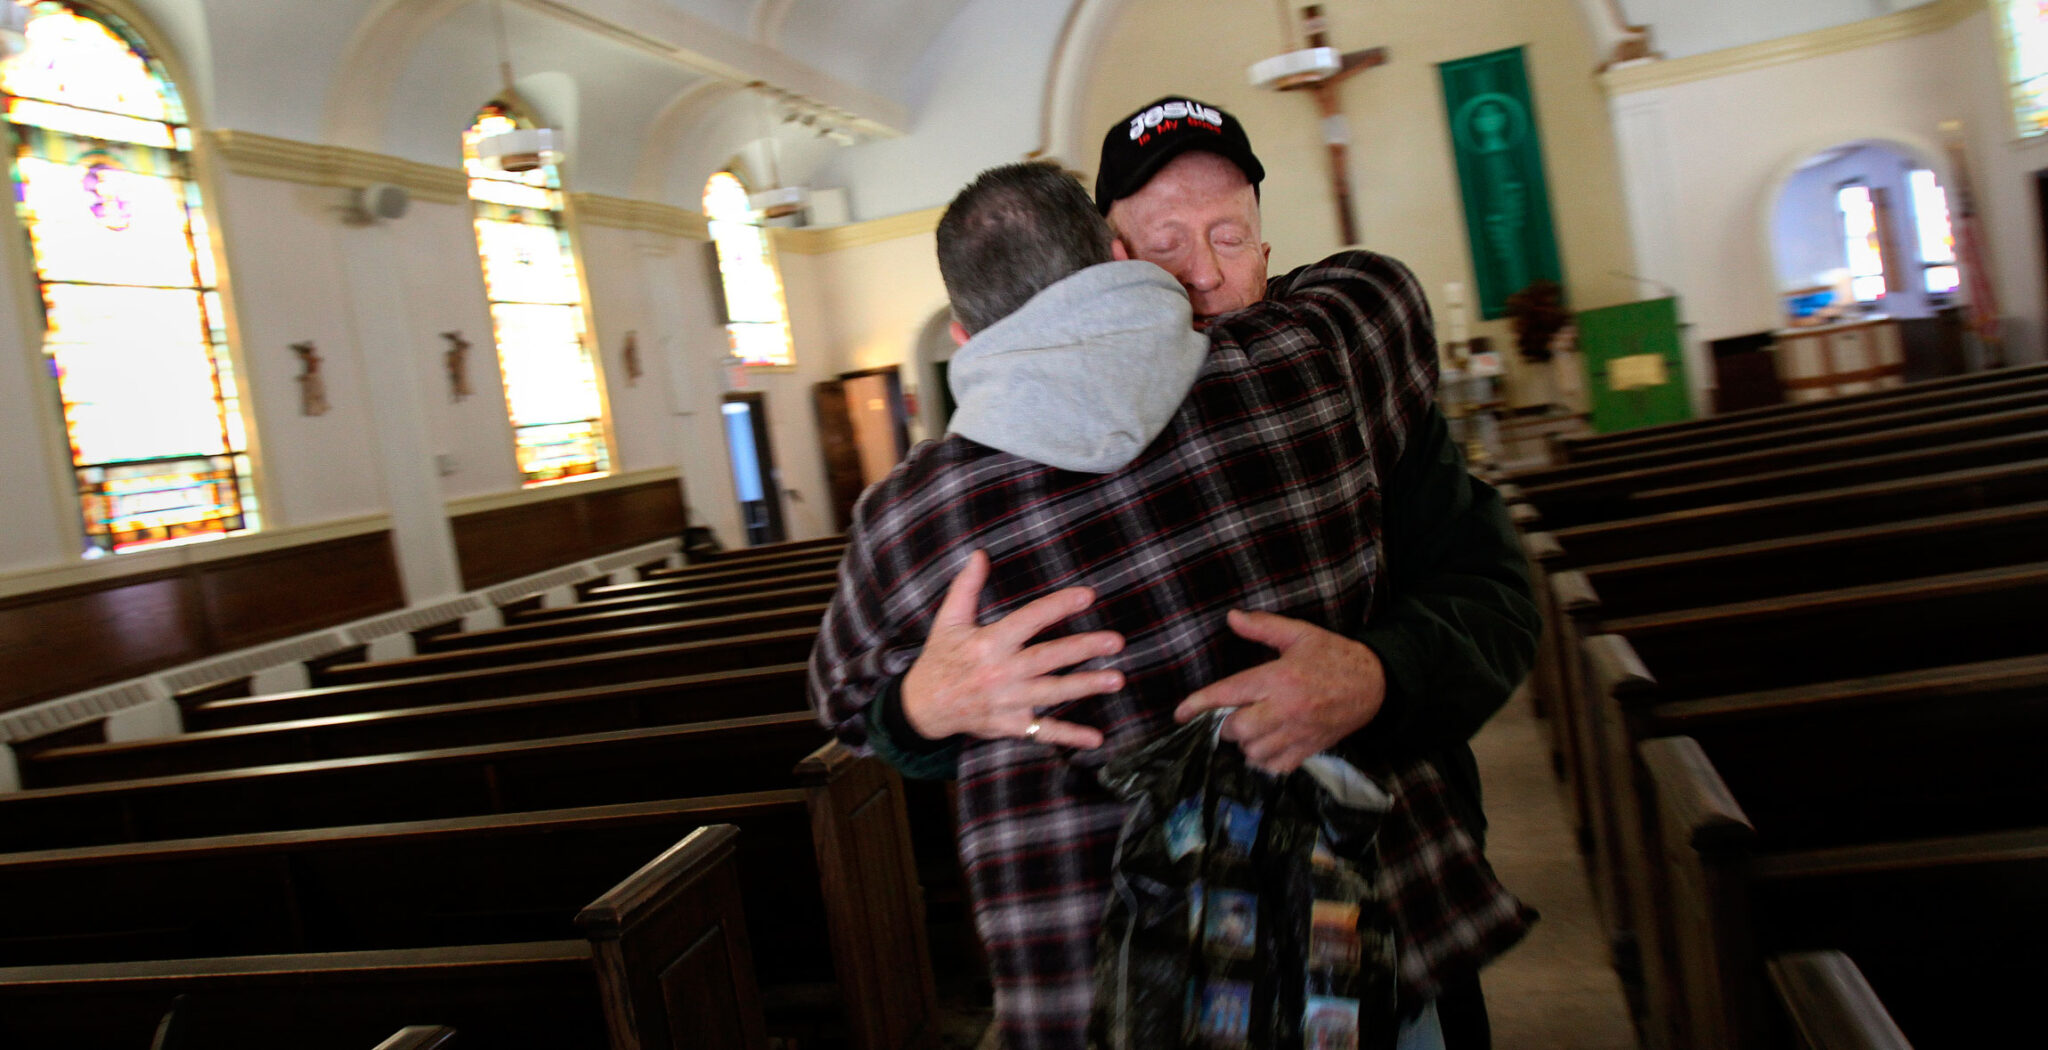 Un sacerdote acoge con una abrazo a un feligrés en medio de una iglesia vacía